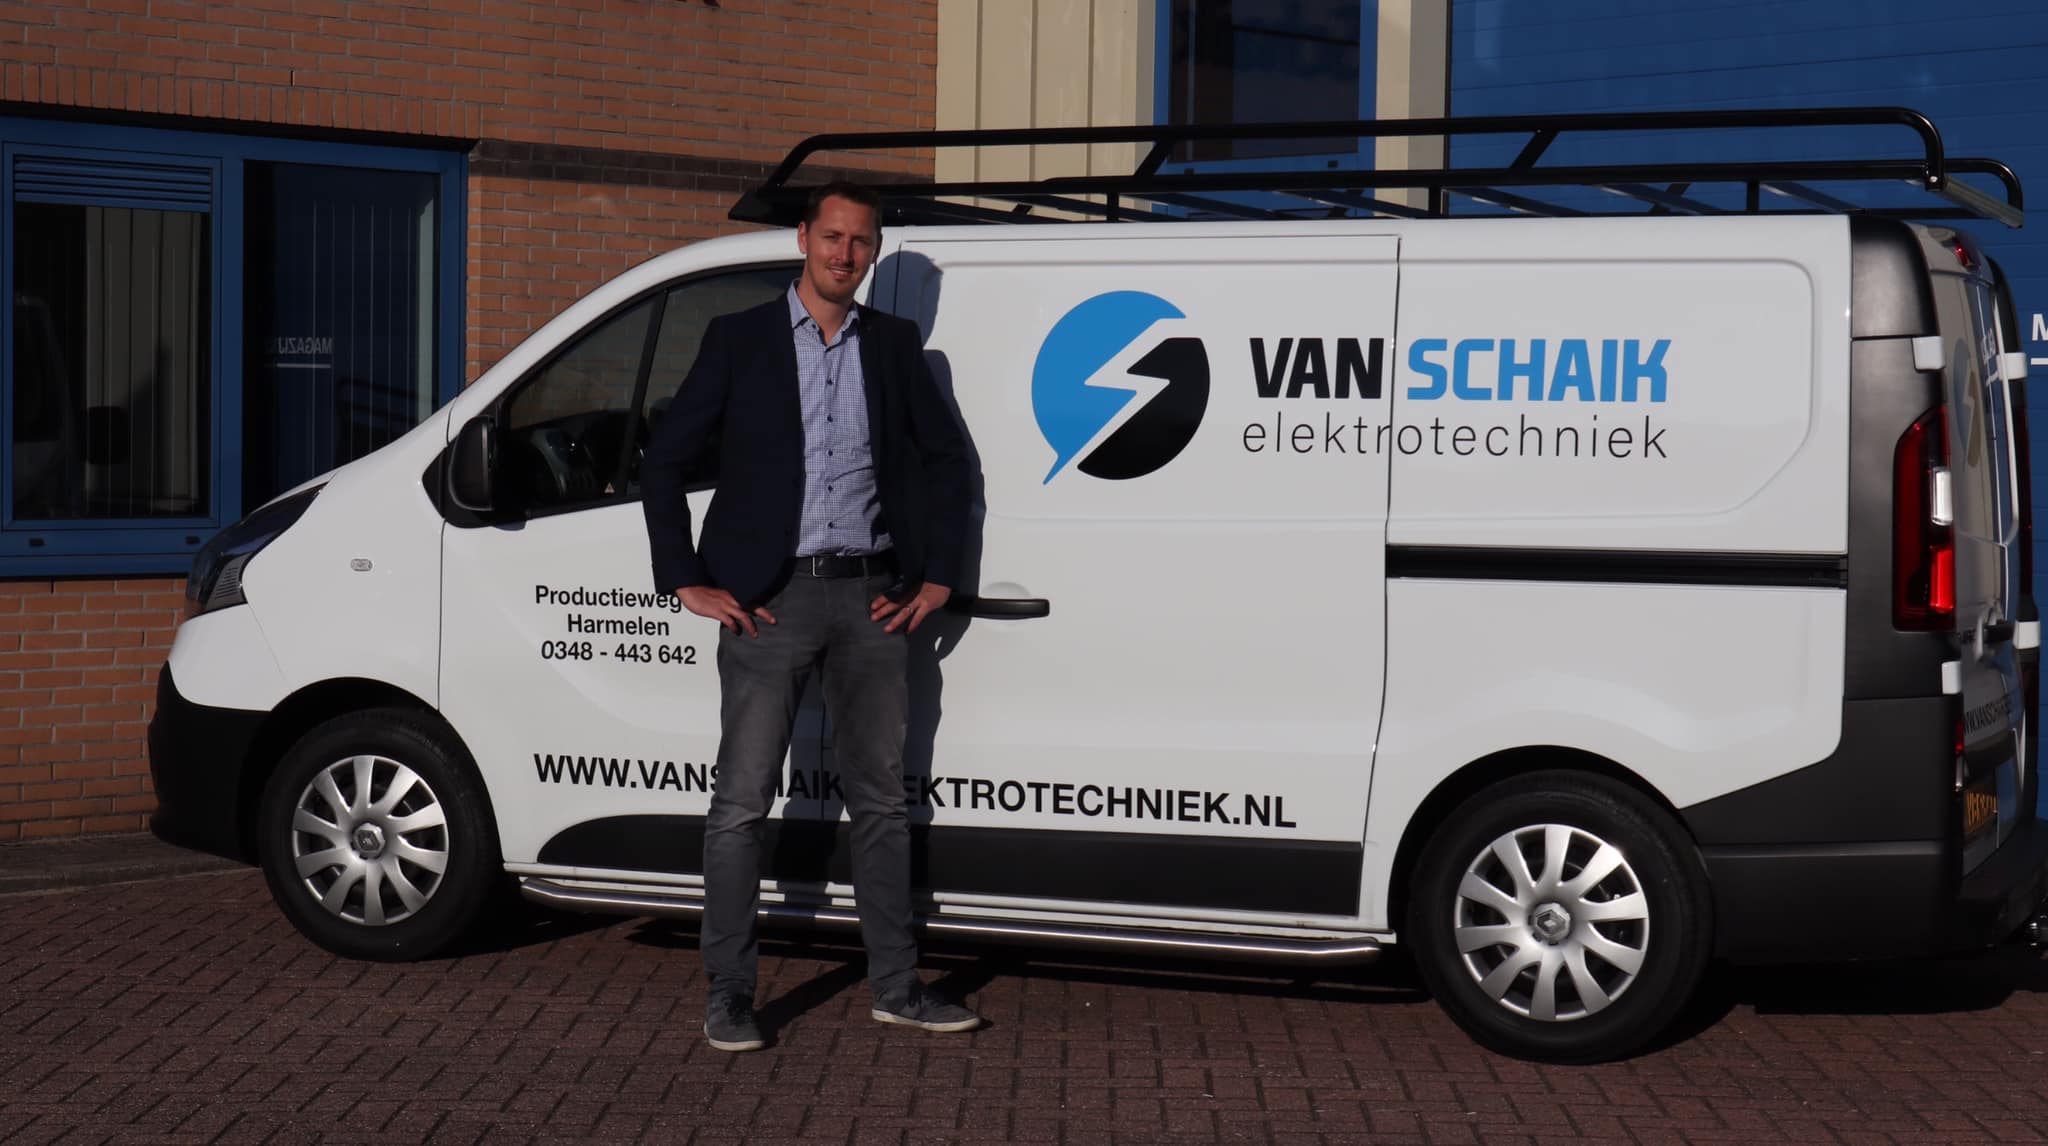 Elektrotechniek Kess Van Schaik